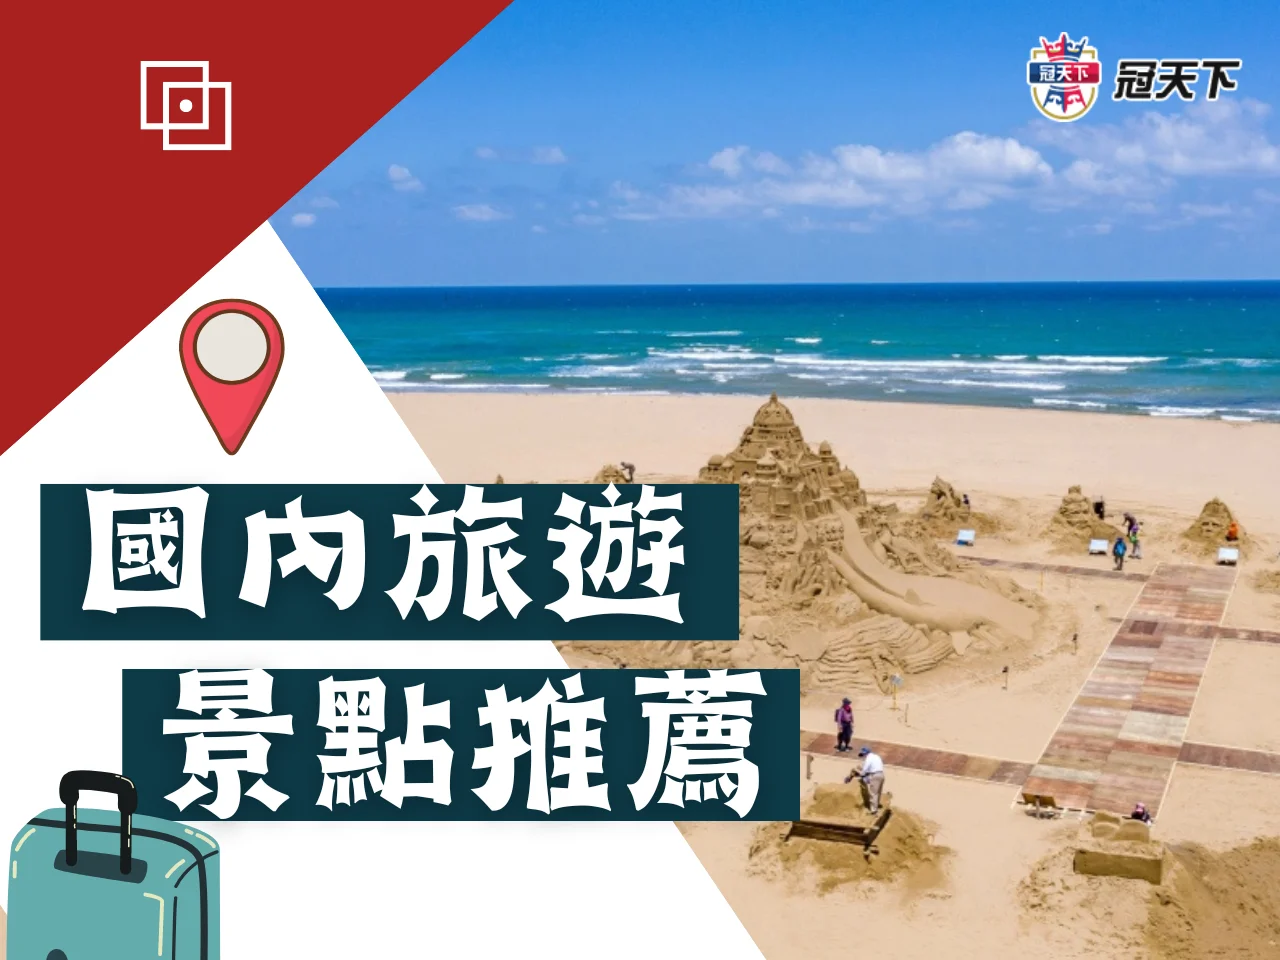 國內旅遊推薦景點 自由行景點 台灣必去景點